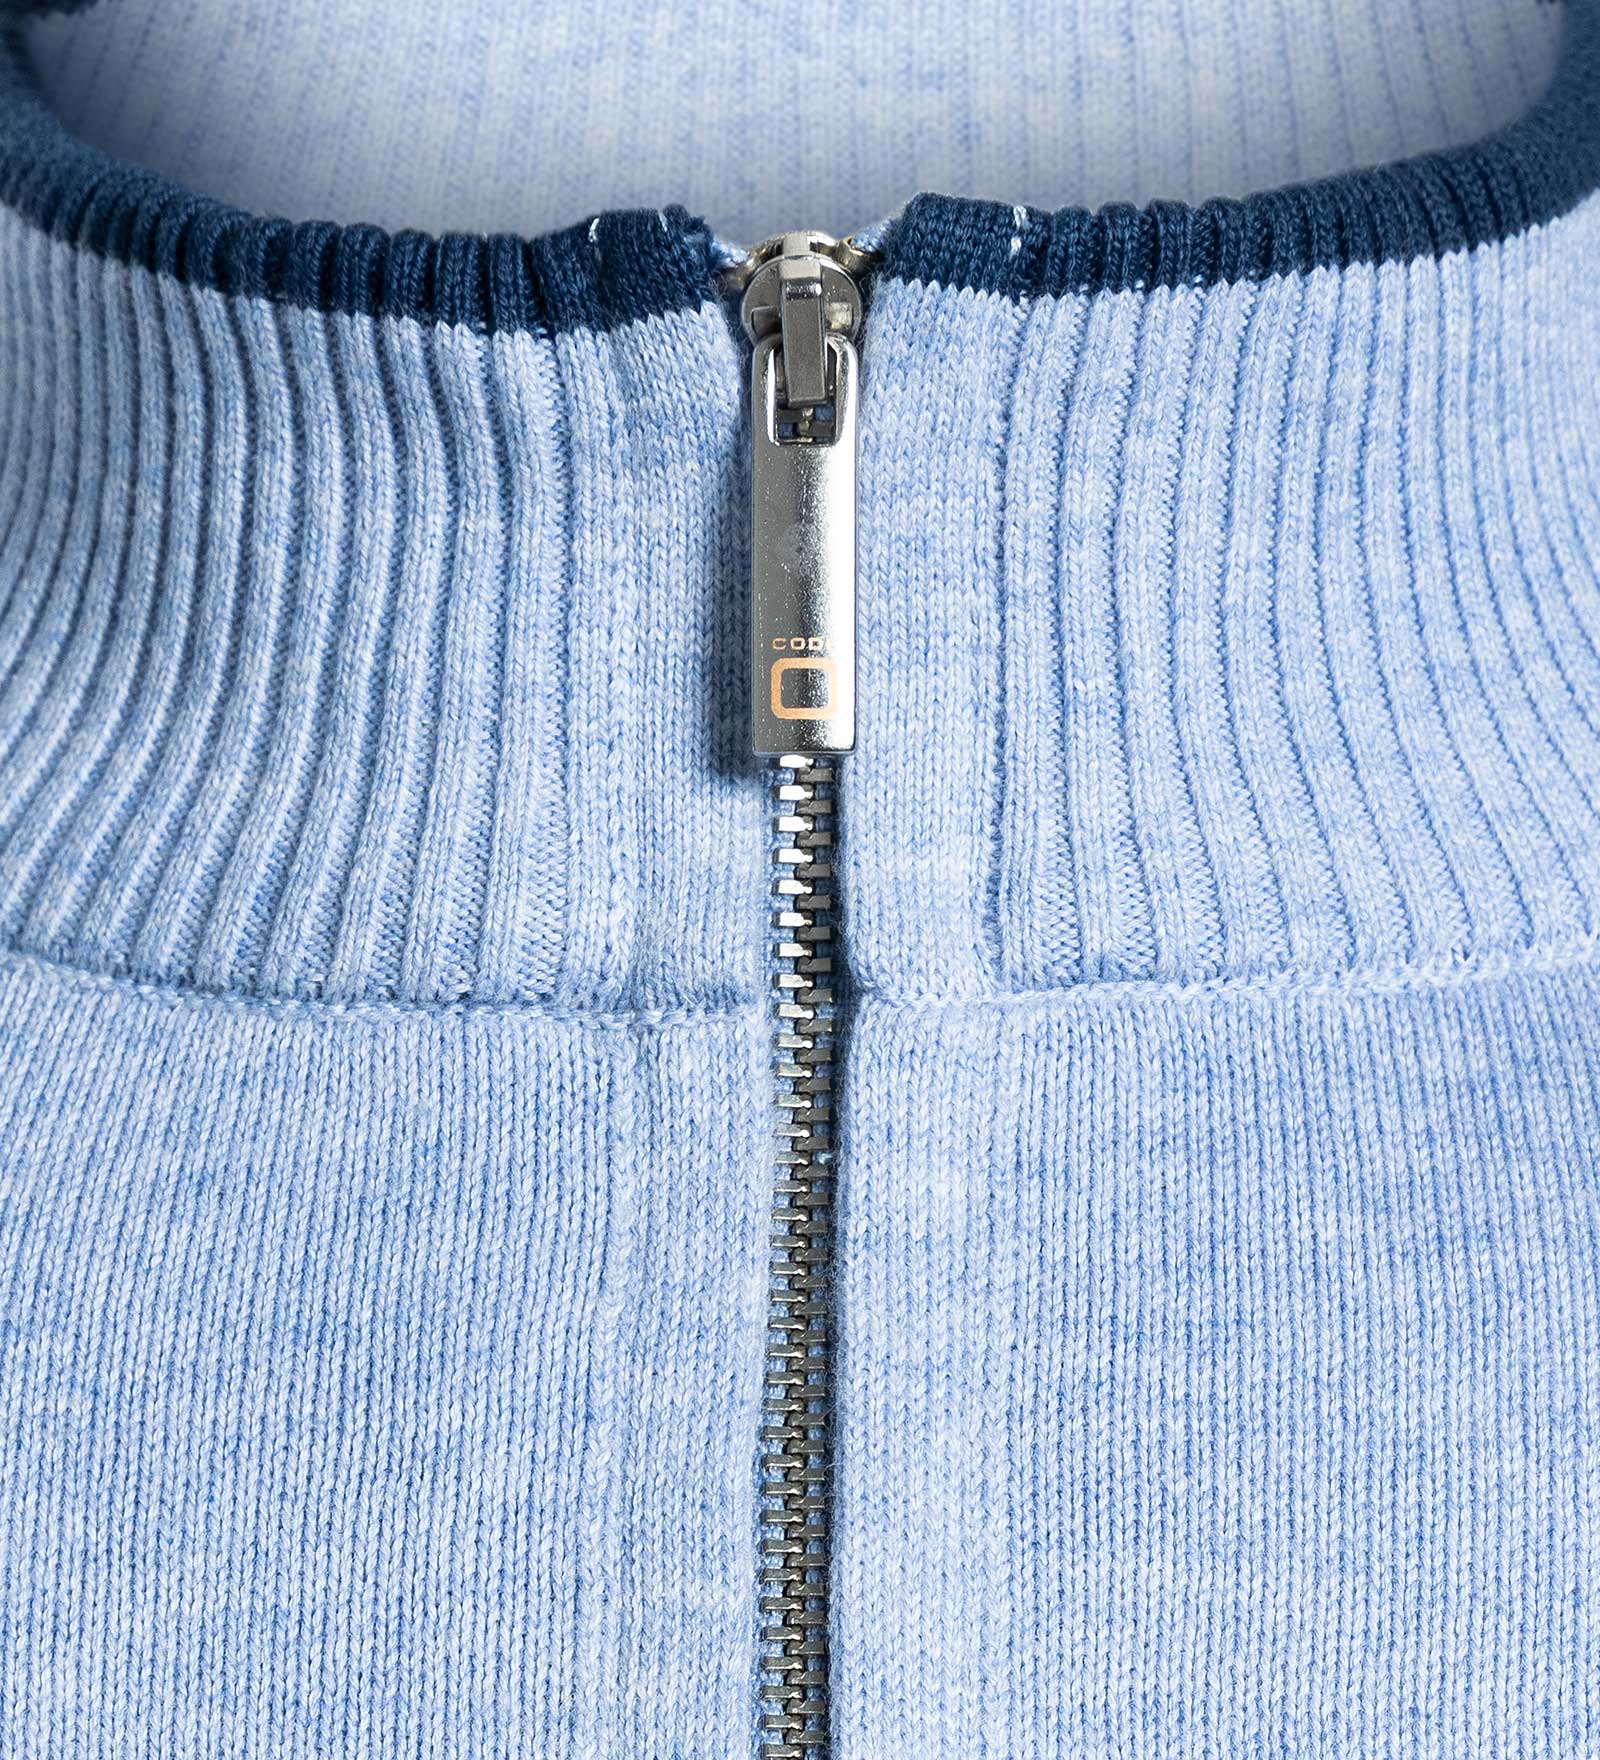 Pullover Half-Zip Blau für Herren 